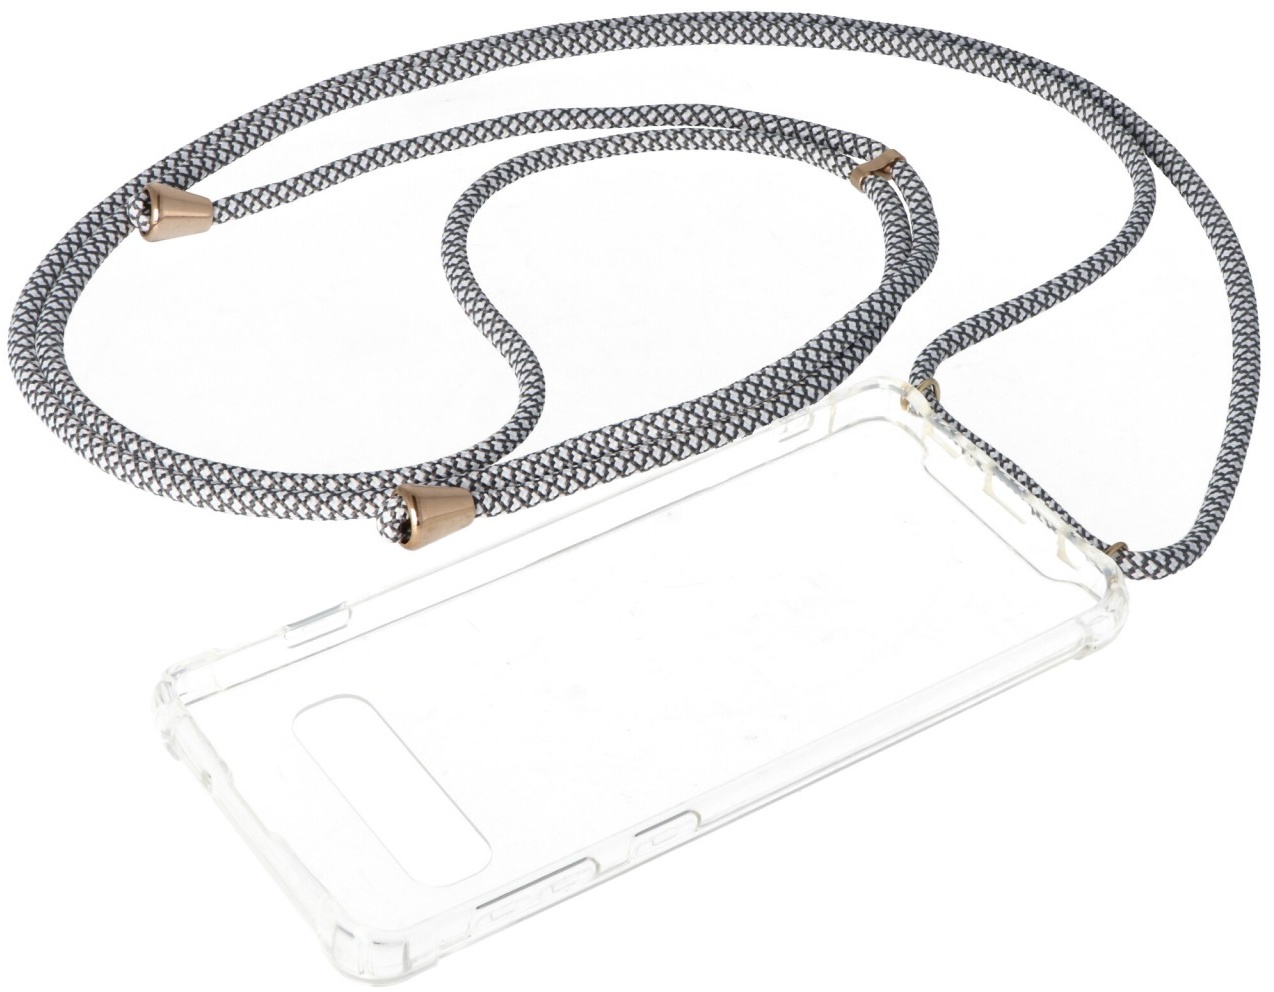 Necklace Case passend für Samsung Galaxy S10, Smartphonehülle mit Kordel grau,weiß zum Umhängen